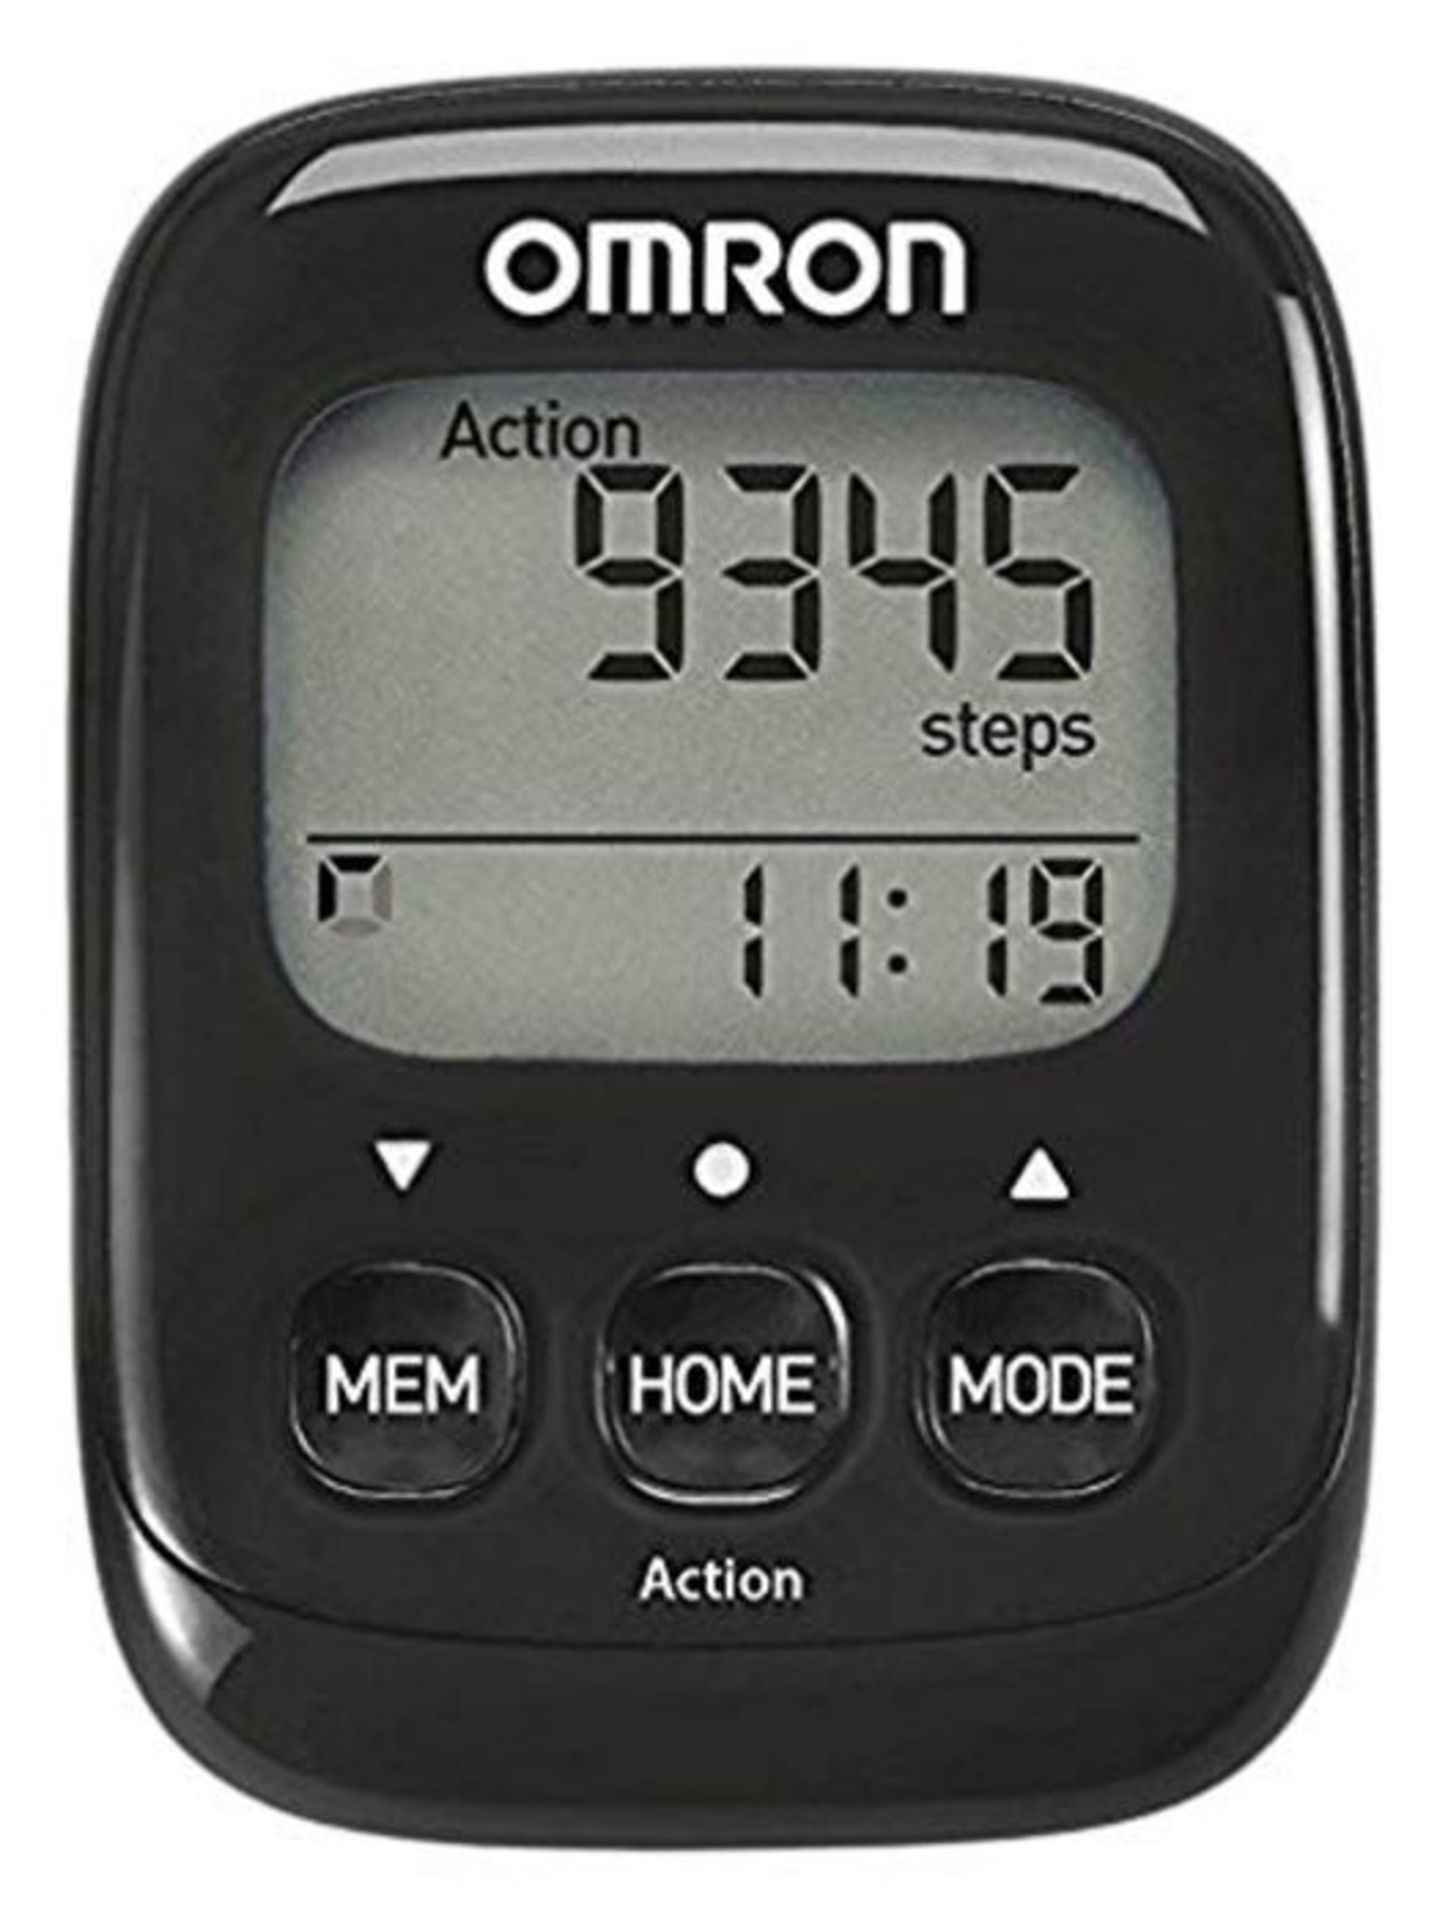 OMRON SchrittzÃ¤hler Walking Style IV mit prÃ¤zisem 3D Sensor zur Messung von Schr